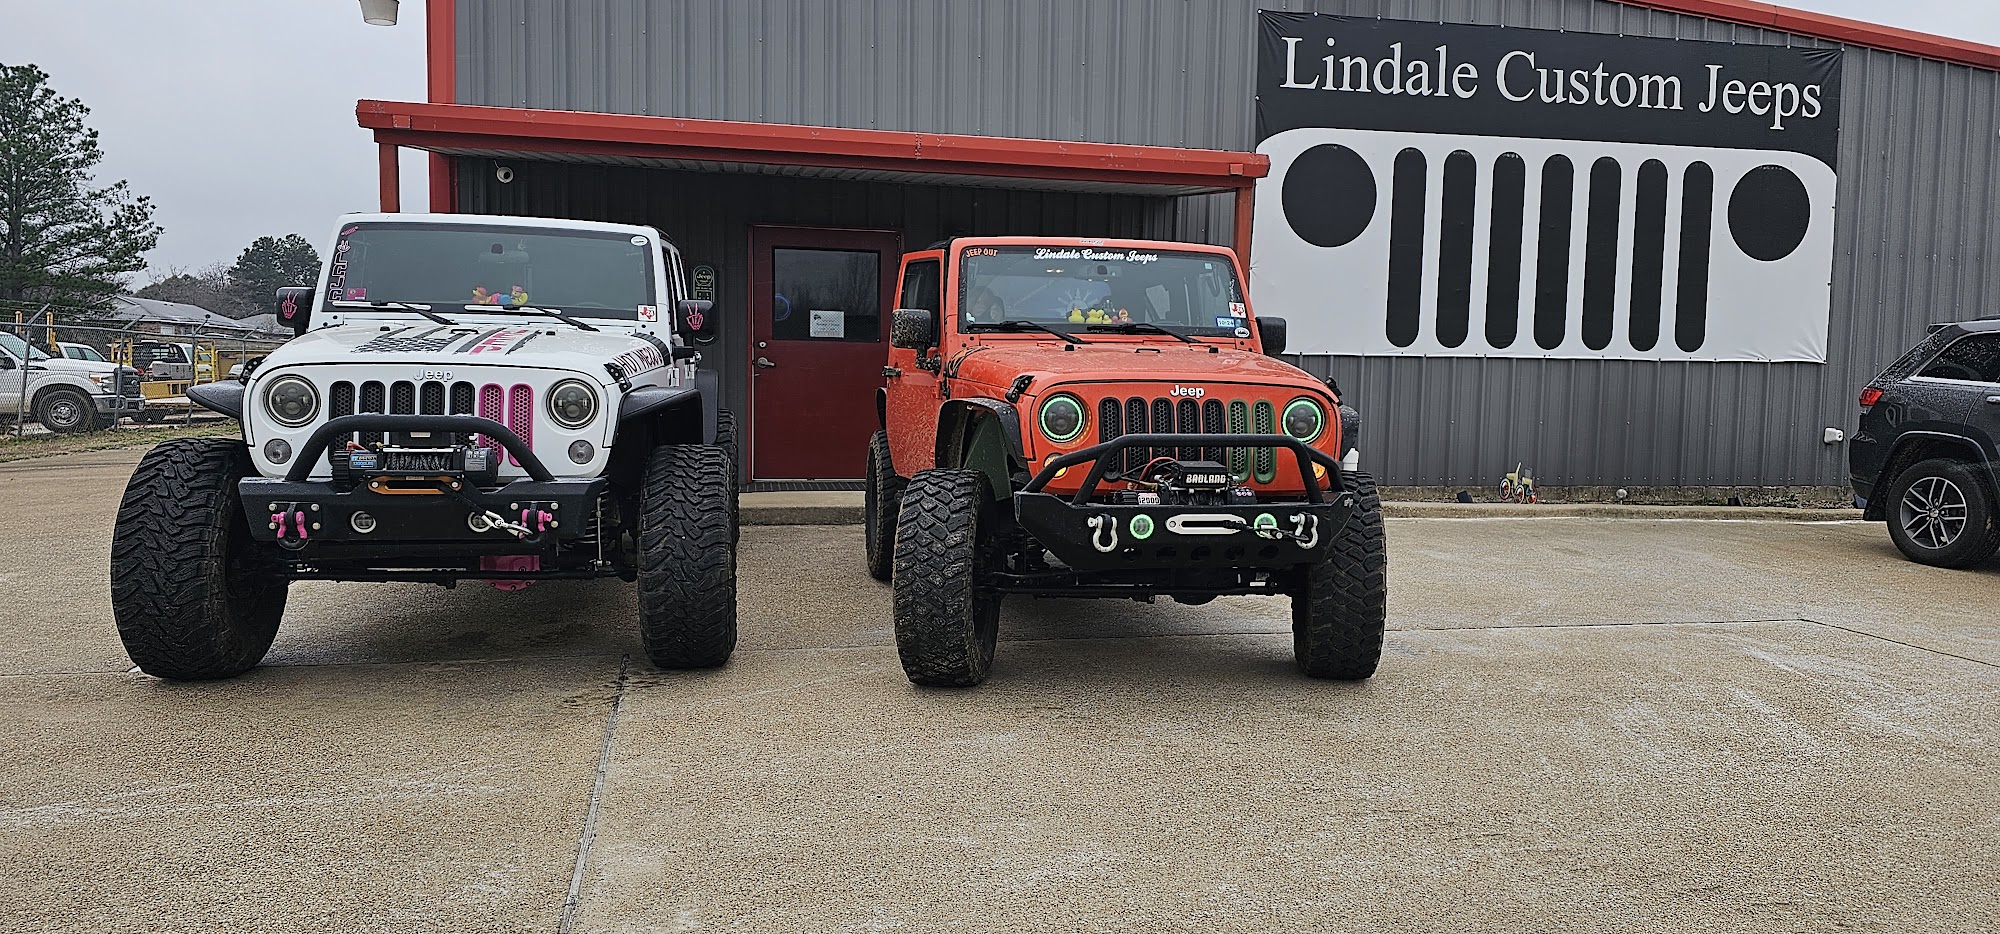 Lindale Custom Jeeps